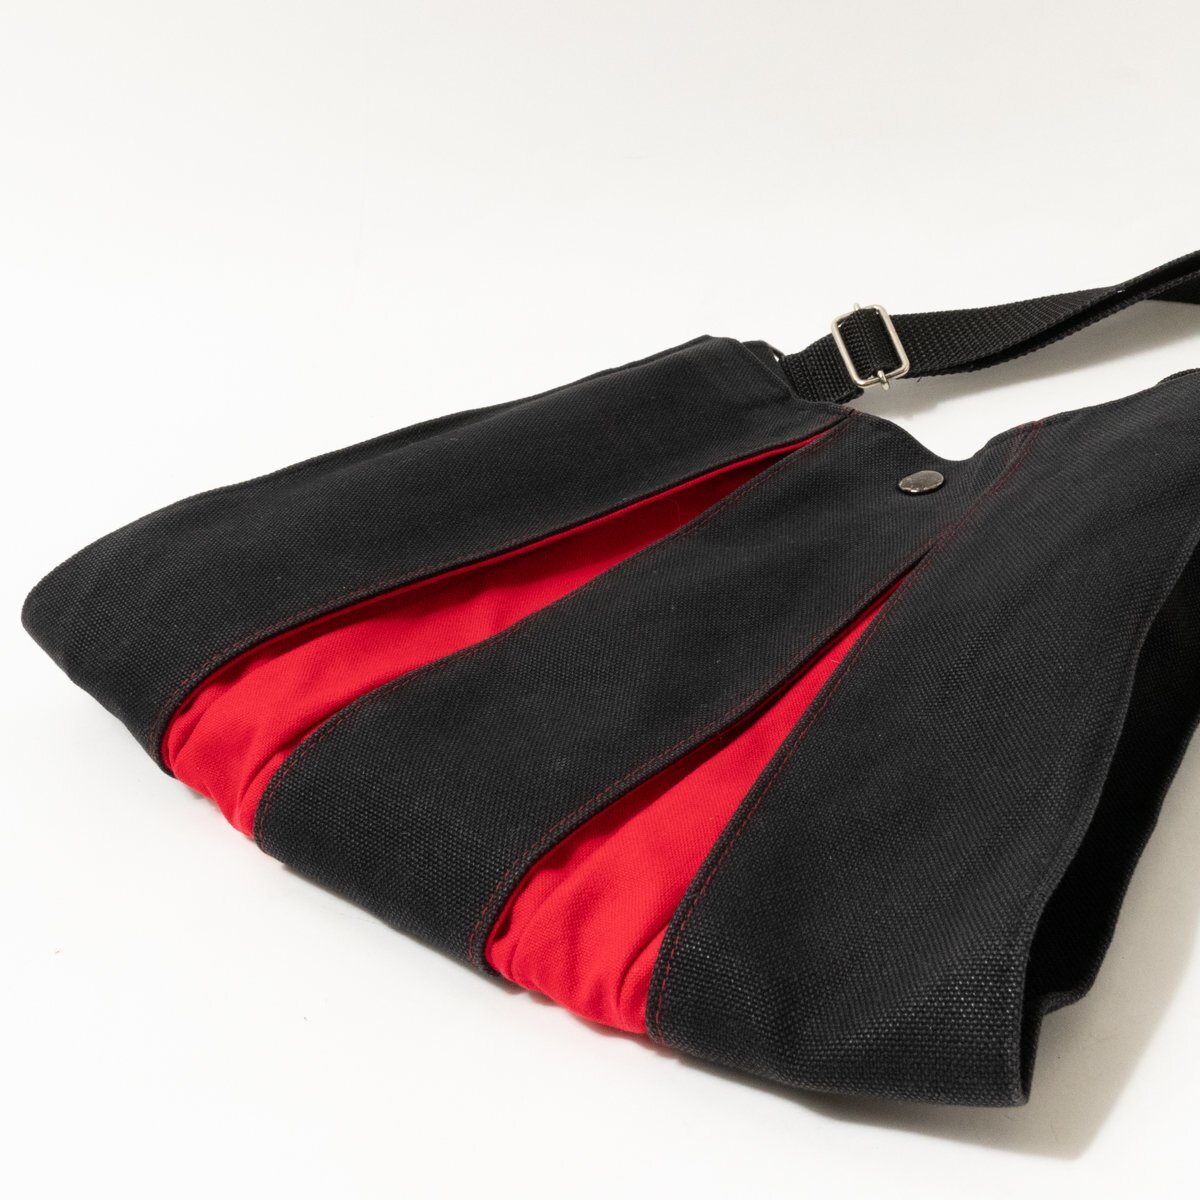 光章 こうしょう 京都KOSHO ショルダーバッグ ブラック 黒 レッド 赤 綿100% 日本製 レディース 斜め掛け シンプル カジュアル bag 鞄_画像5